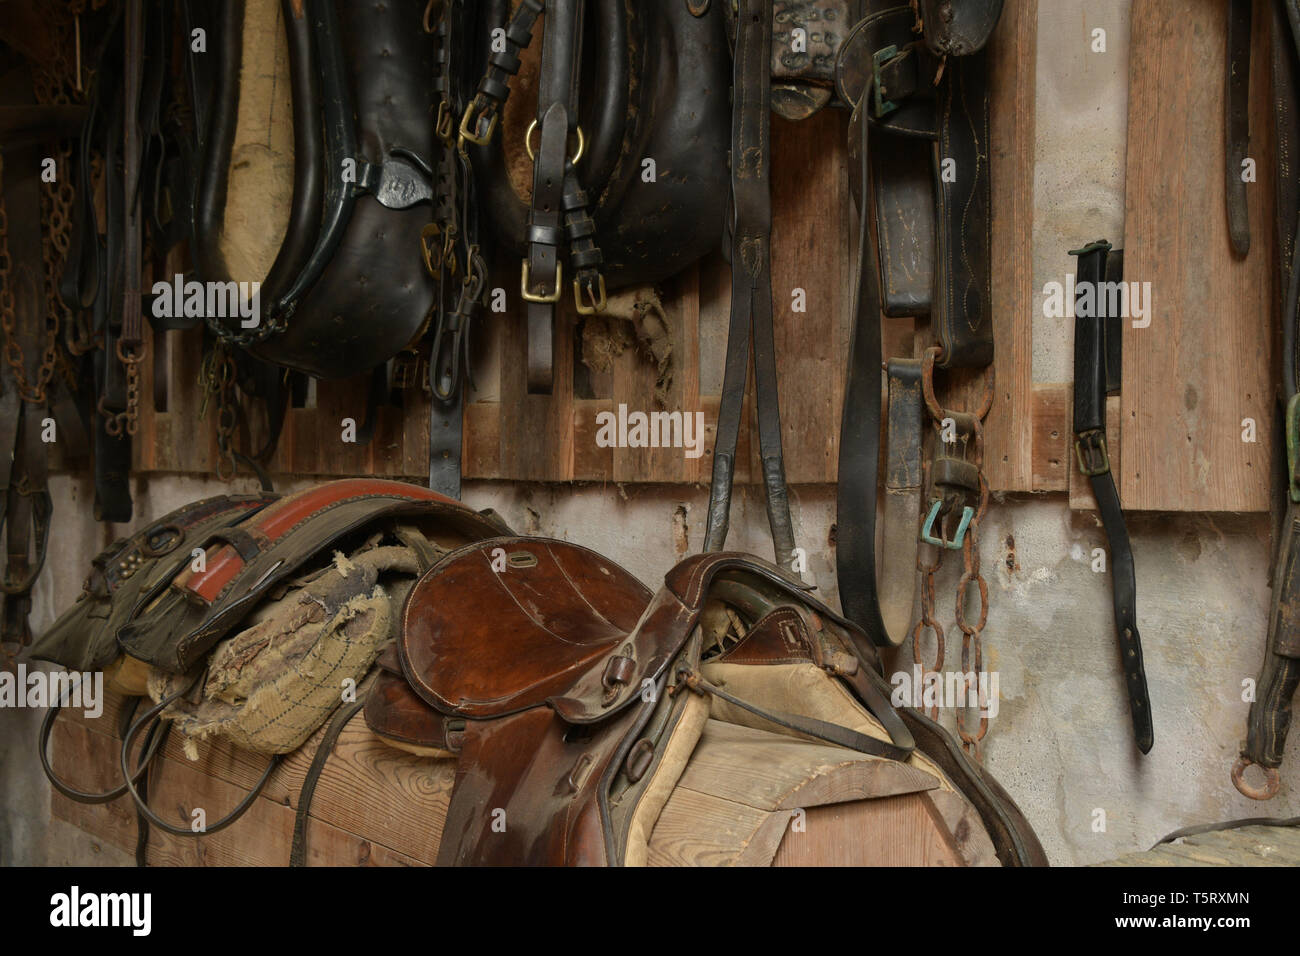 Sellerie éléments qui composent le groupe de colliers de cheval,harnais de cuir et de selles dans les écuries du milieu 18e siècle, située à l'hôtel Hampton Ho Banque D'Images